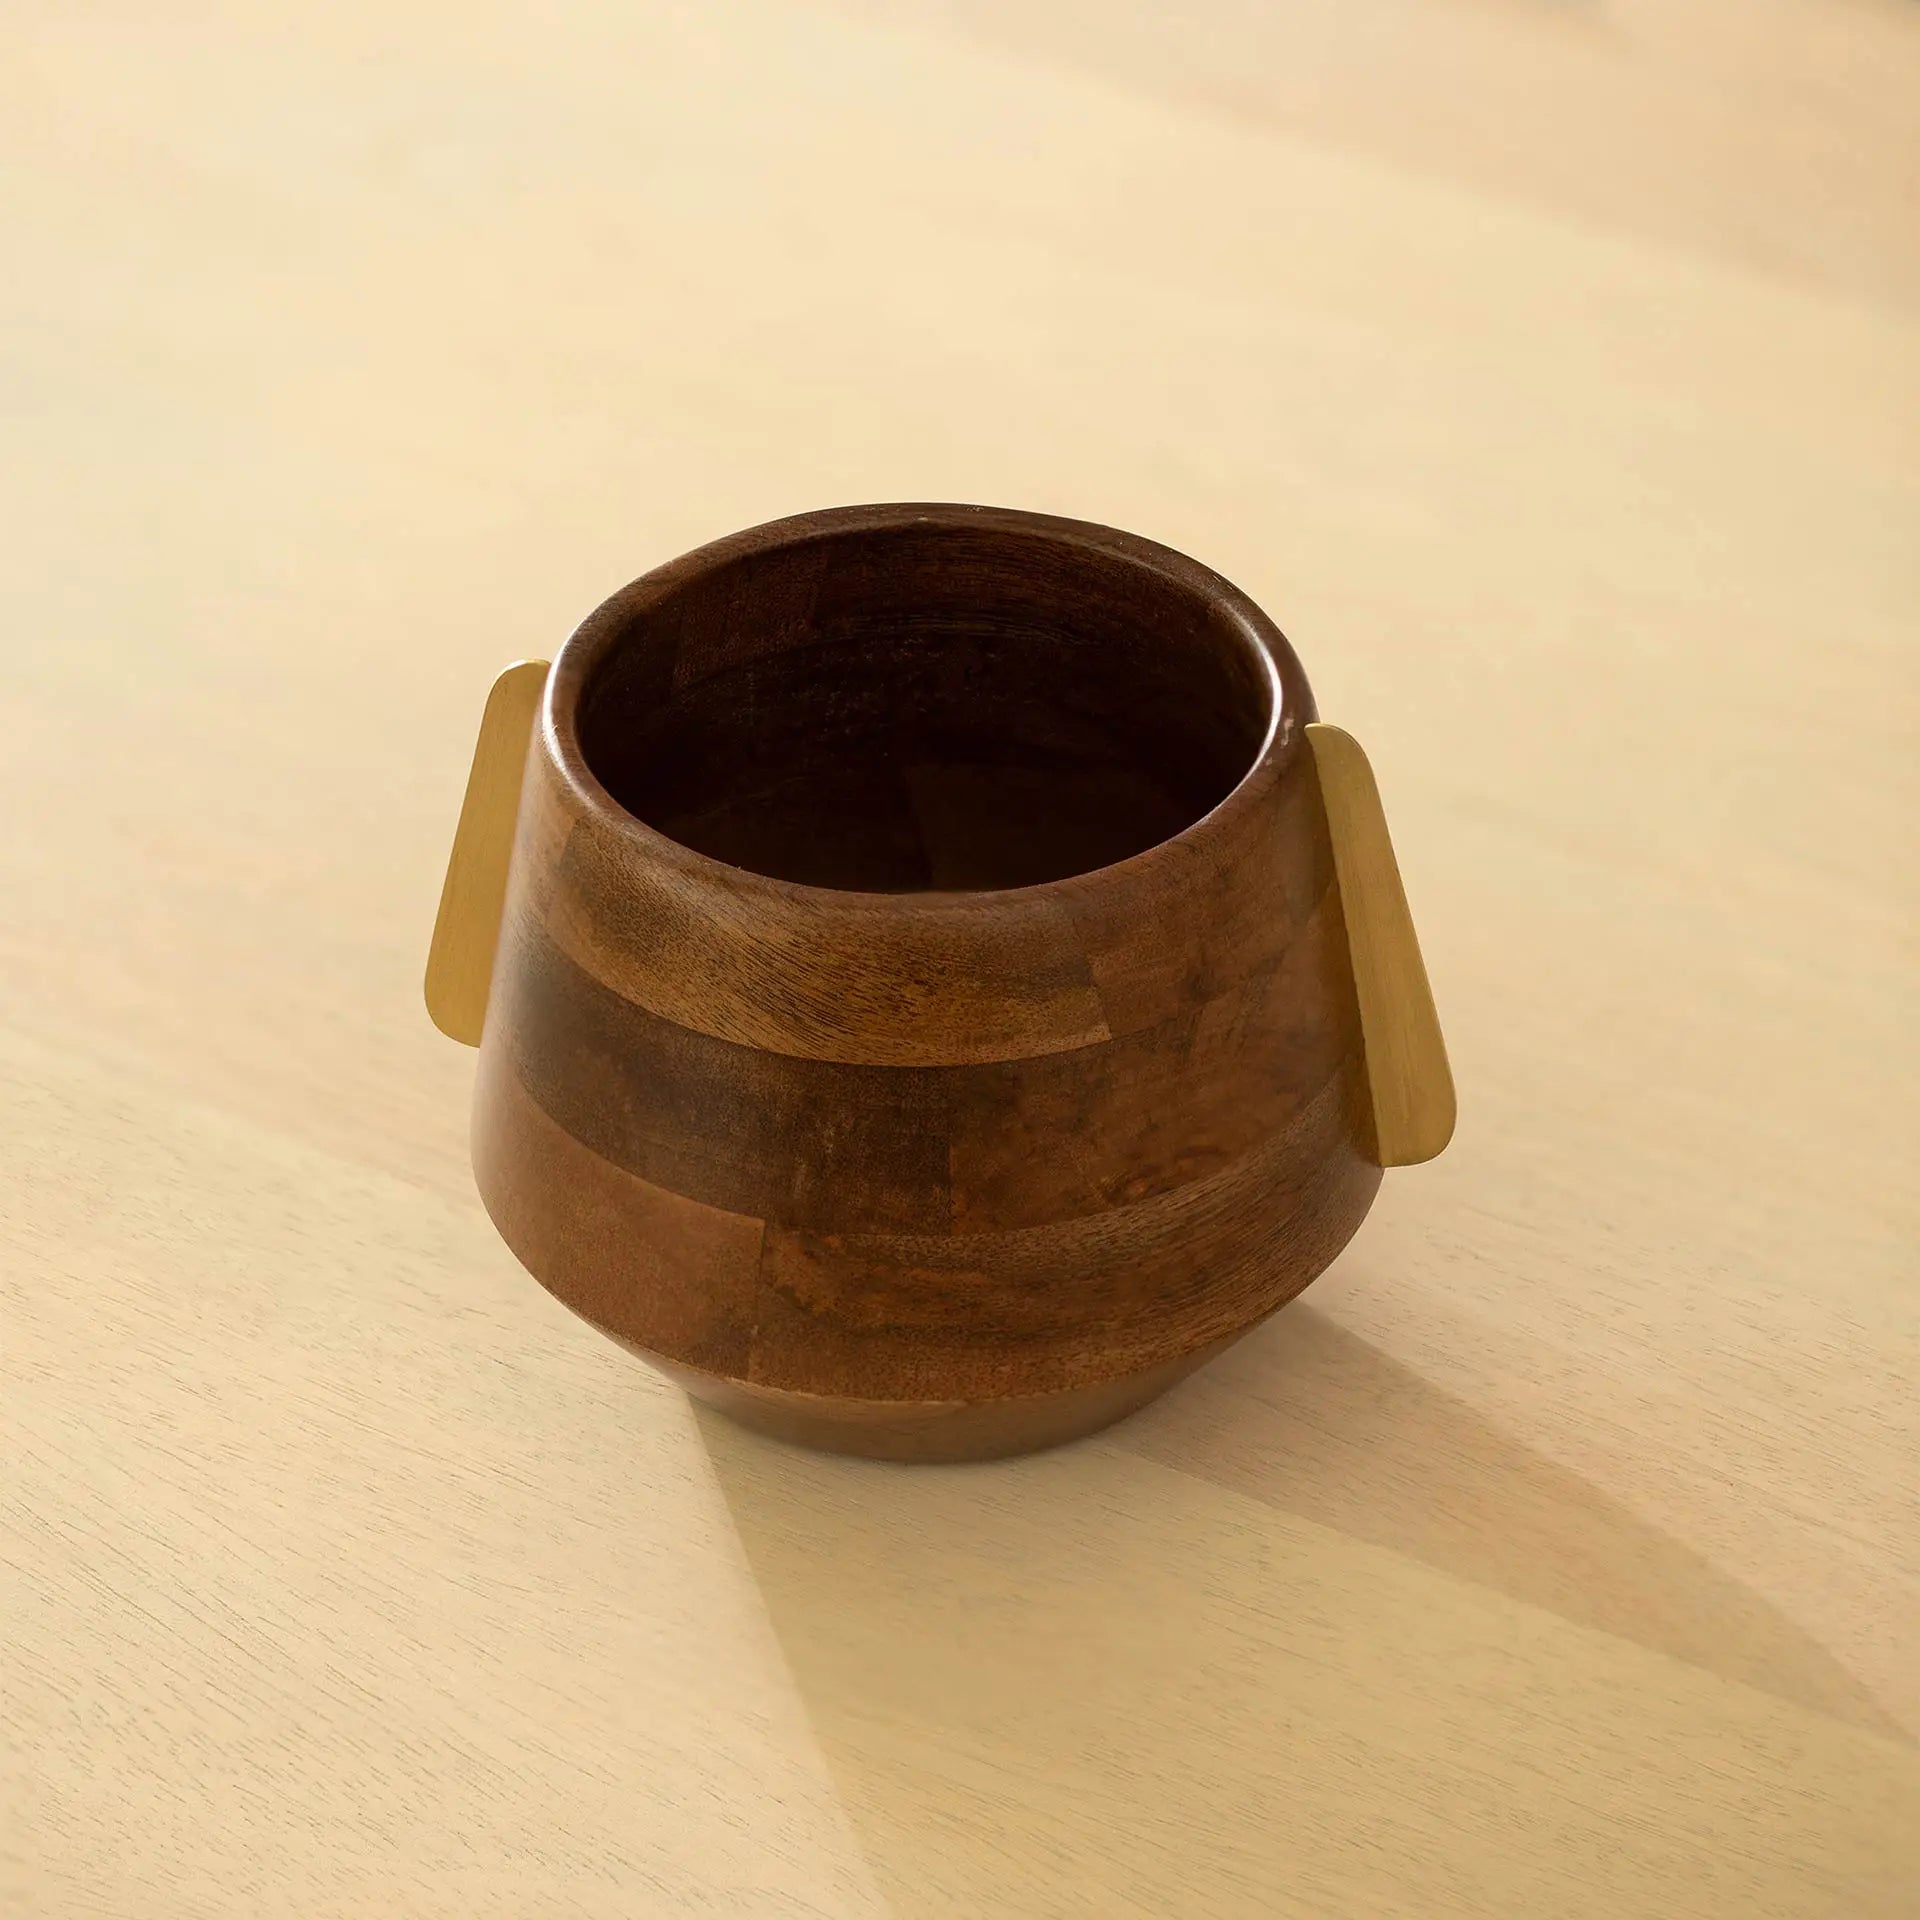 Aranya Wood Brass Nut Bowl - Small